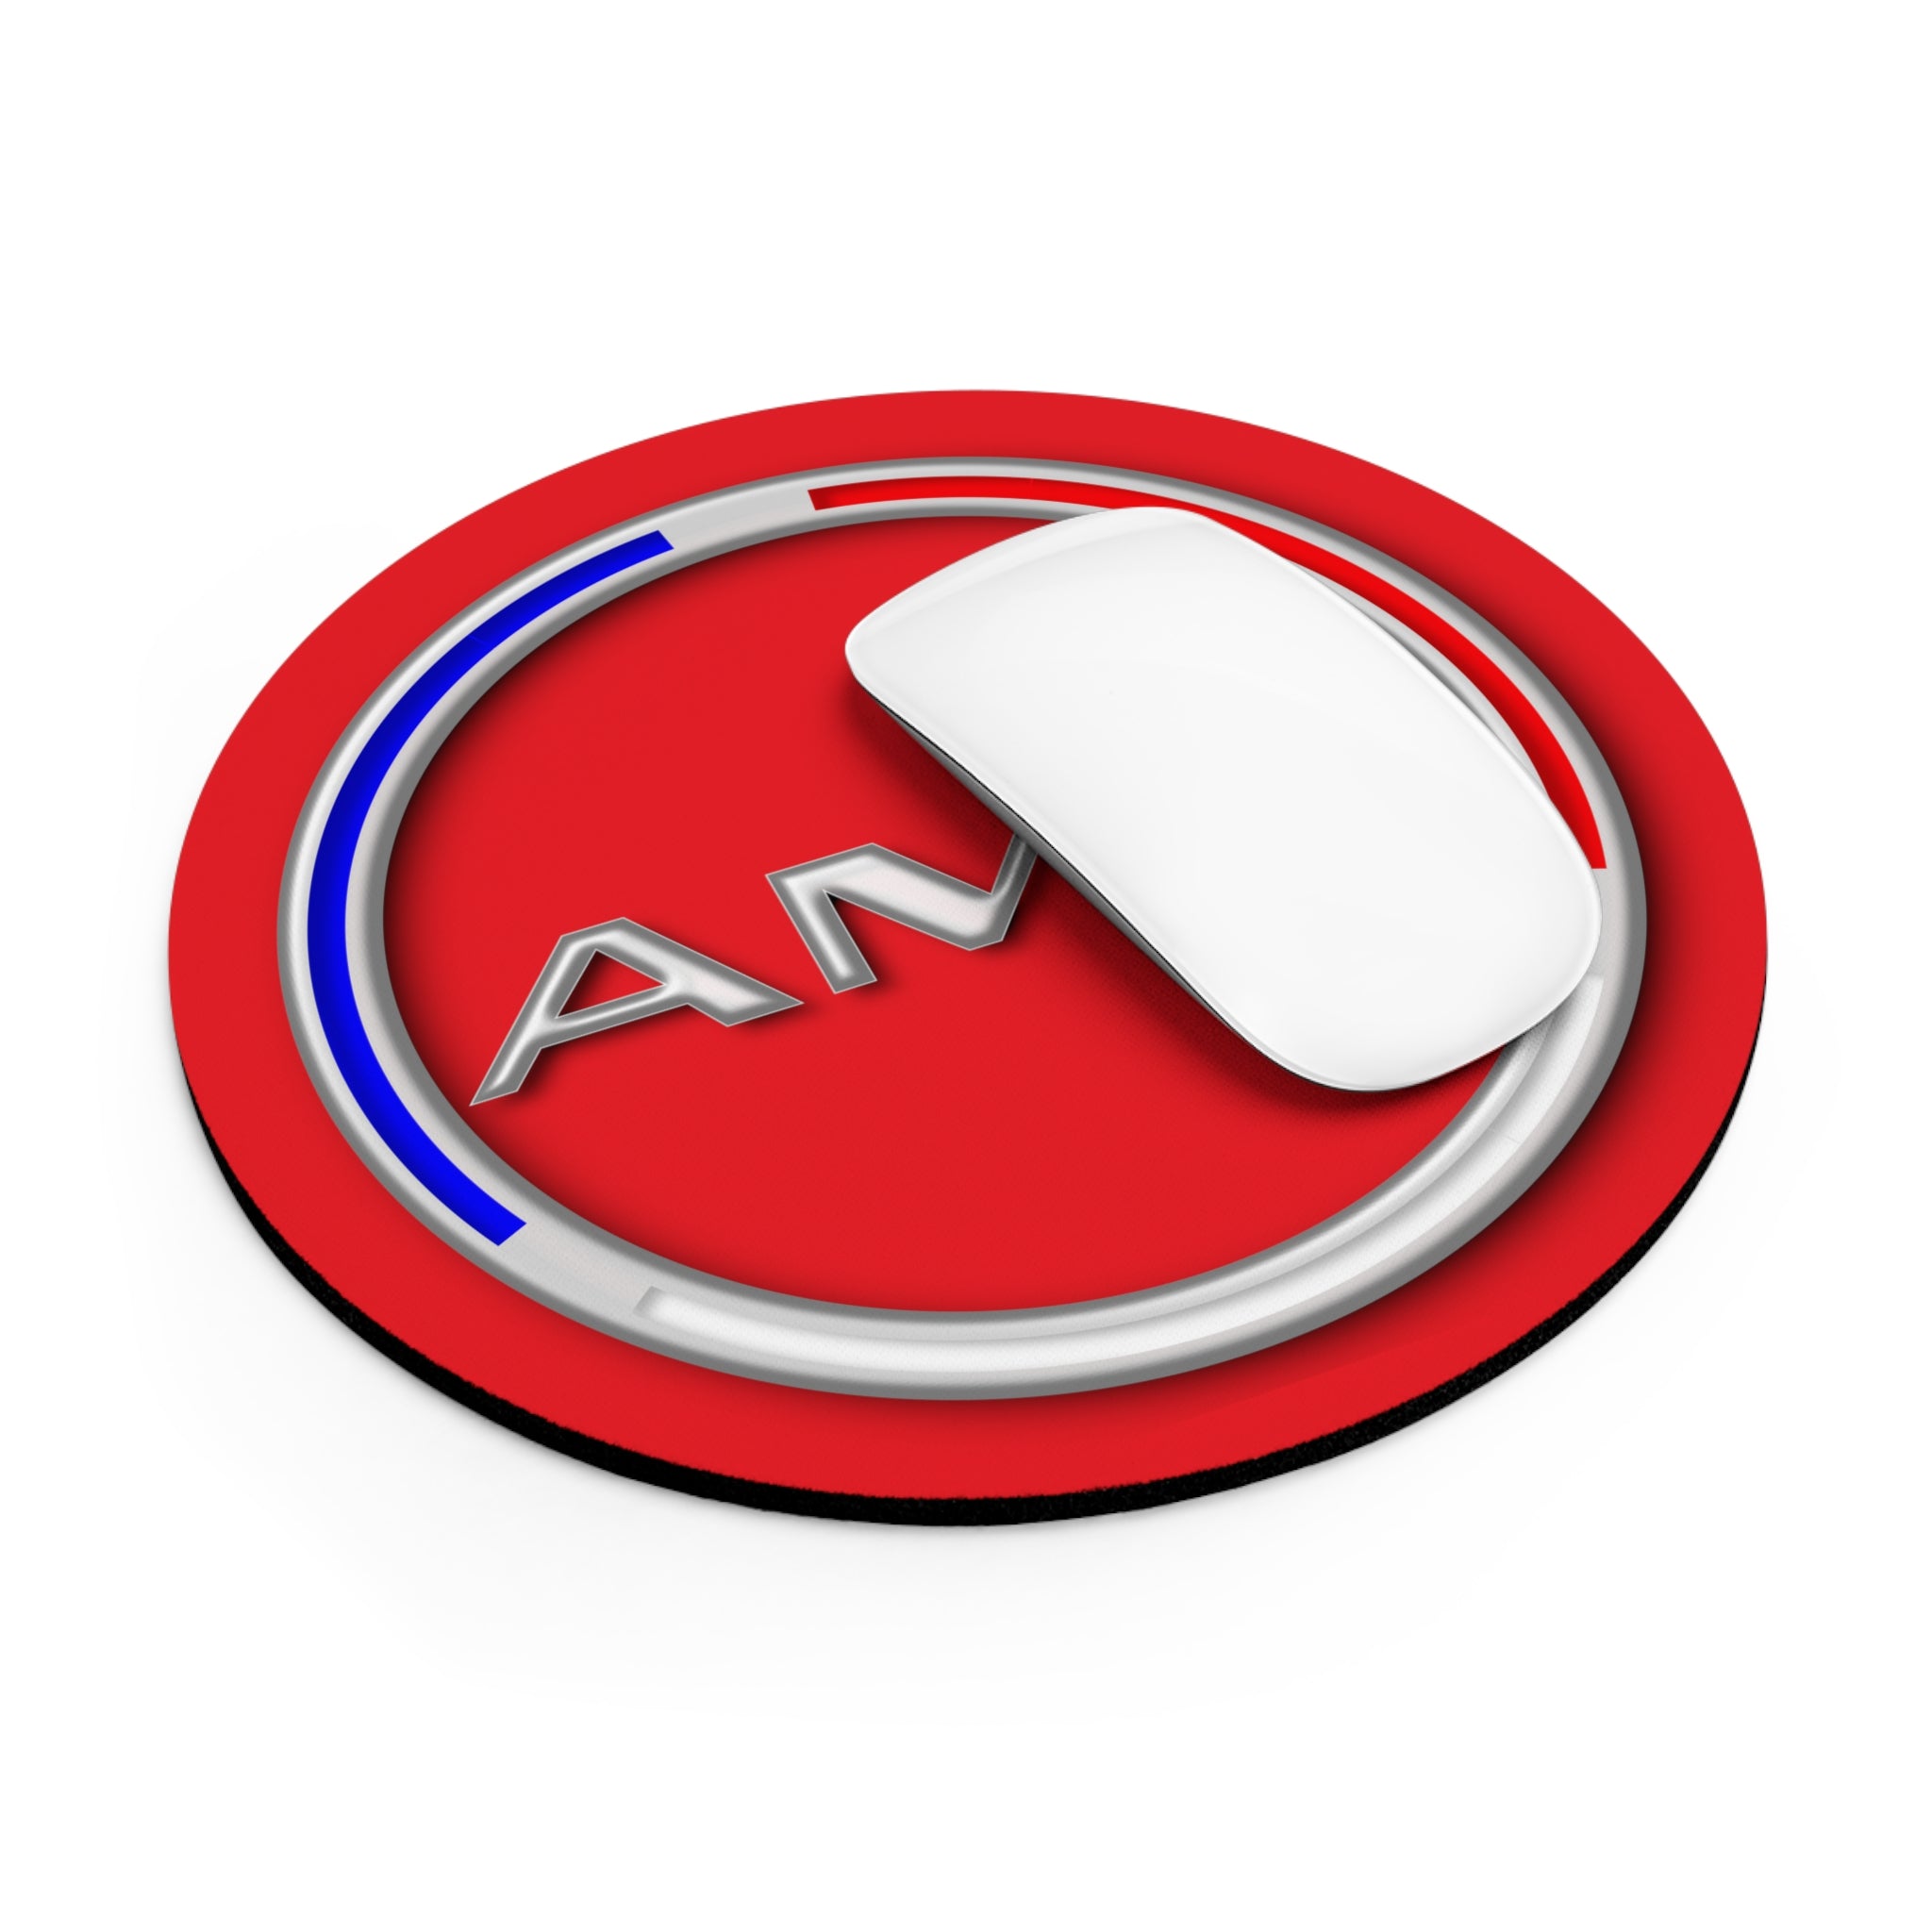 AMC AMX Emblem Round Mousepad